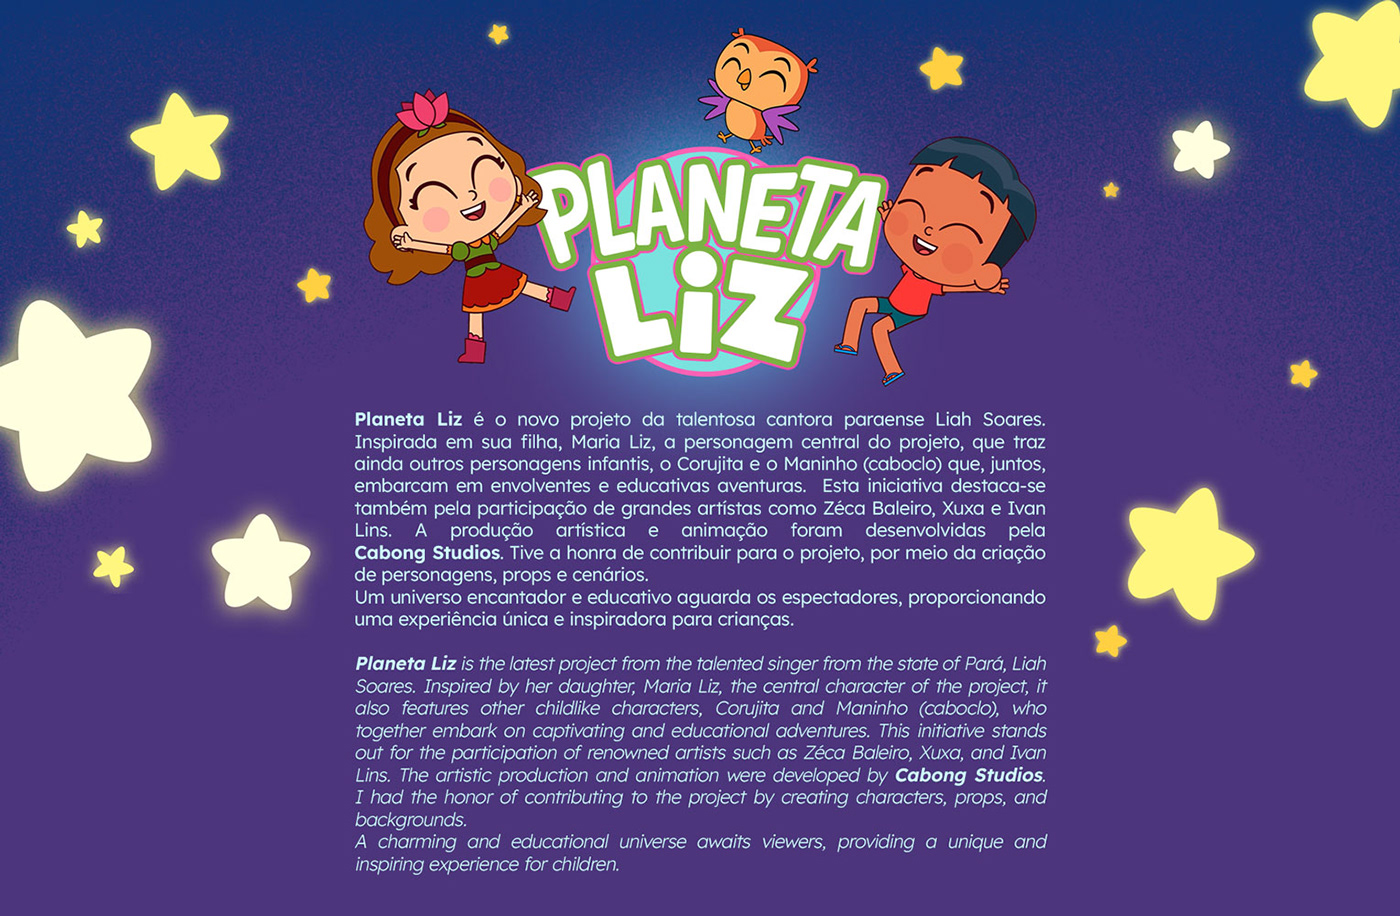 concept art Character design  props Digital Art  ILLUSTRATION  artwork 2D planeta liz